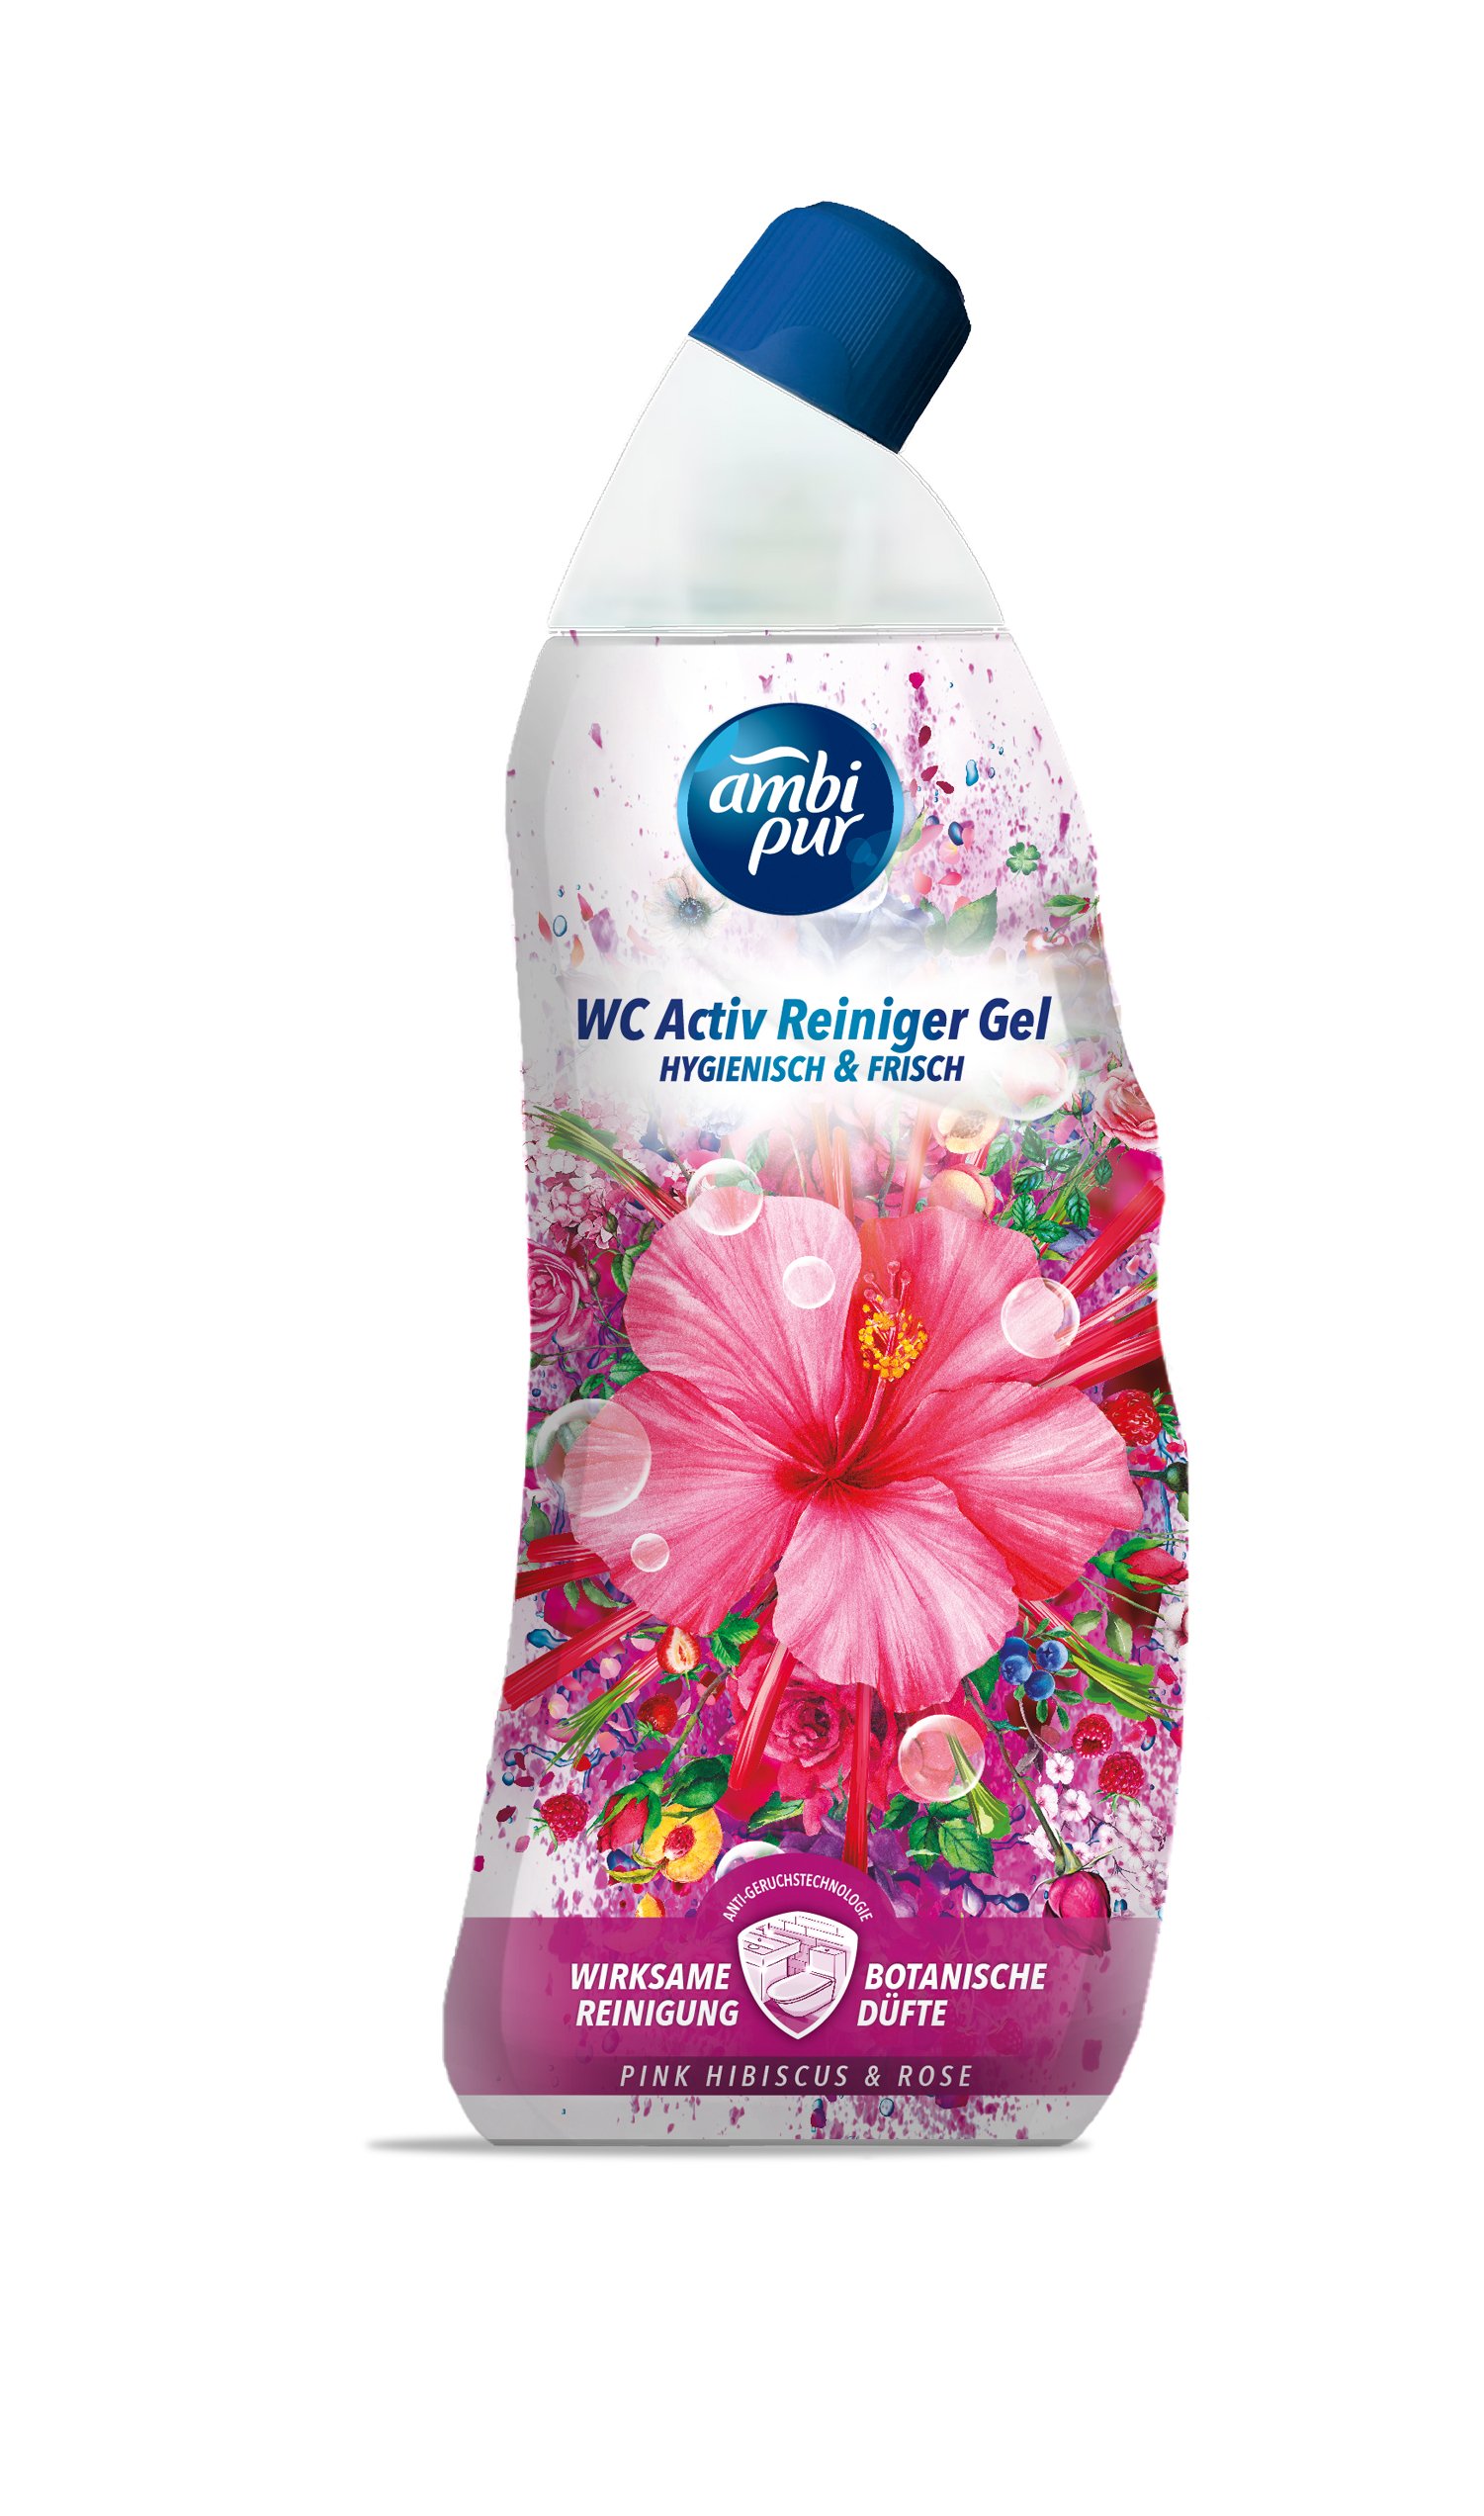 WC valiklis AMBIPUR Pink Hibiscus & Rose, 750 ml